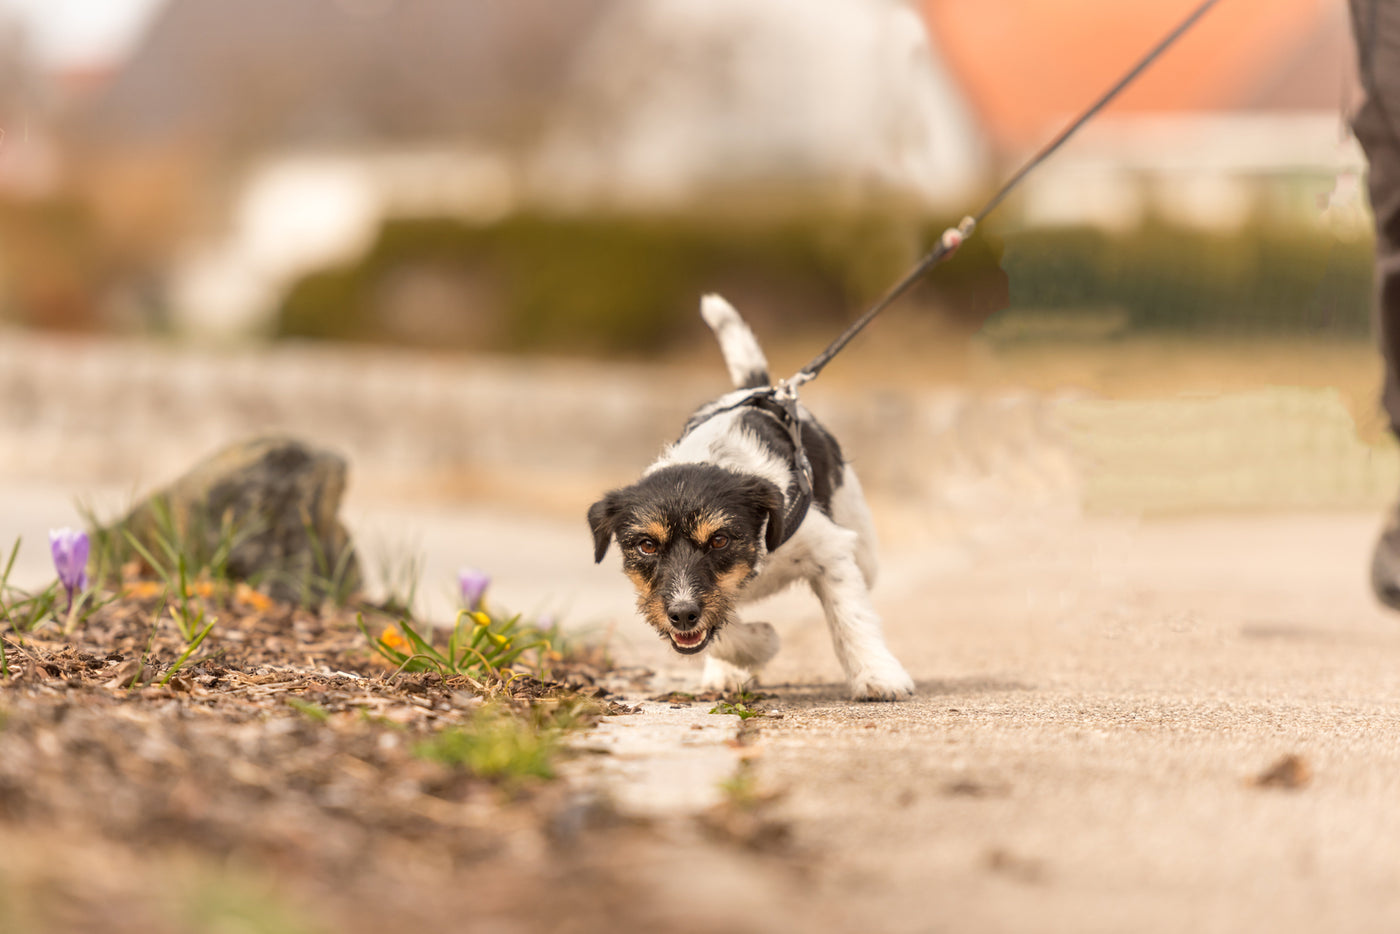 Booster-Kurs "Leinenführigkeit für Profis: Warum Hunde ziehen und wie man Leinenführung gewaltfrei umsetzt"